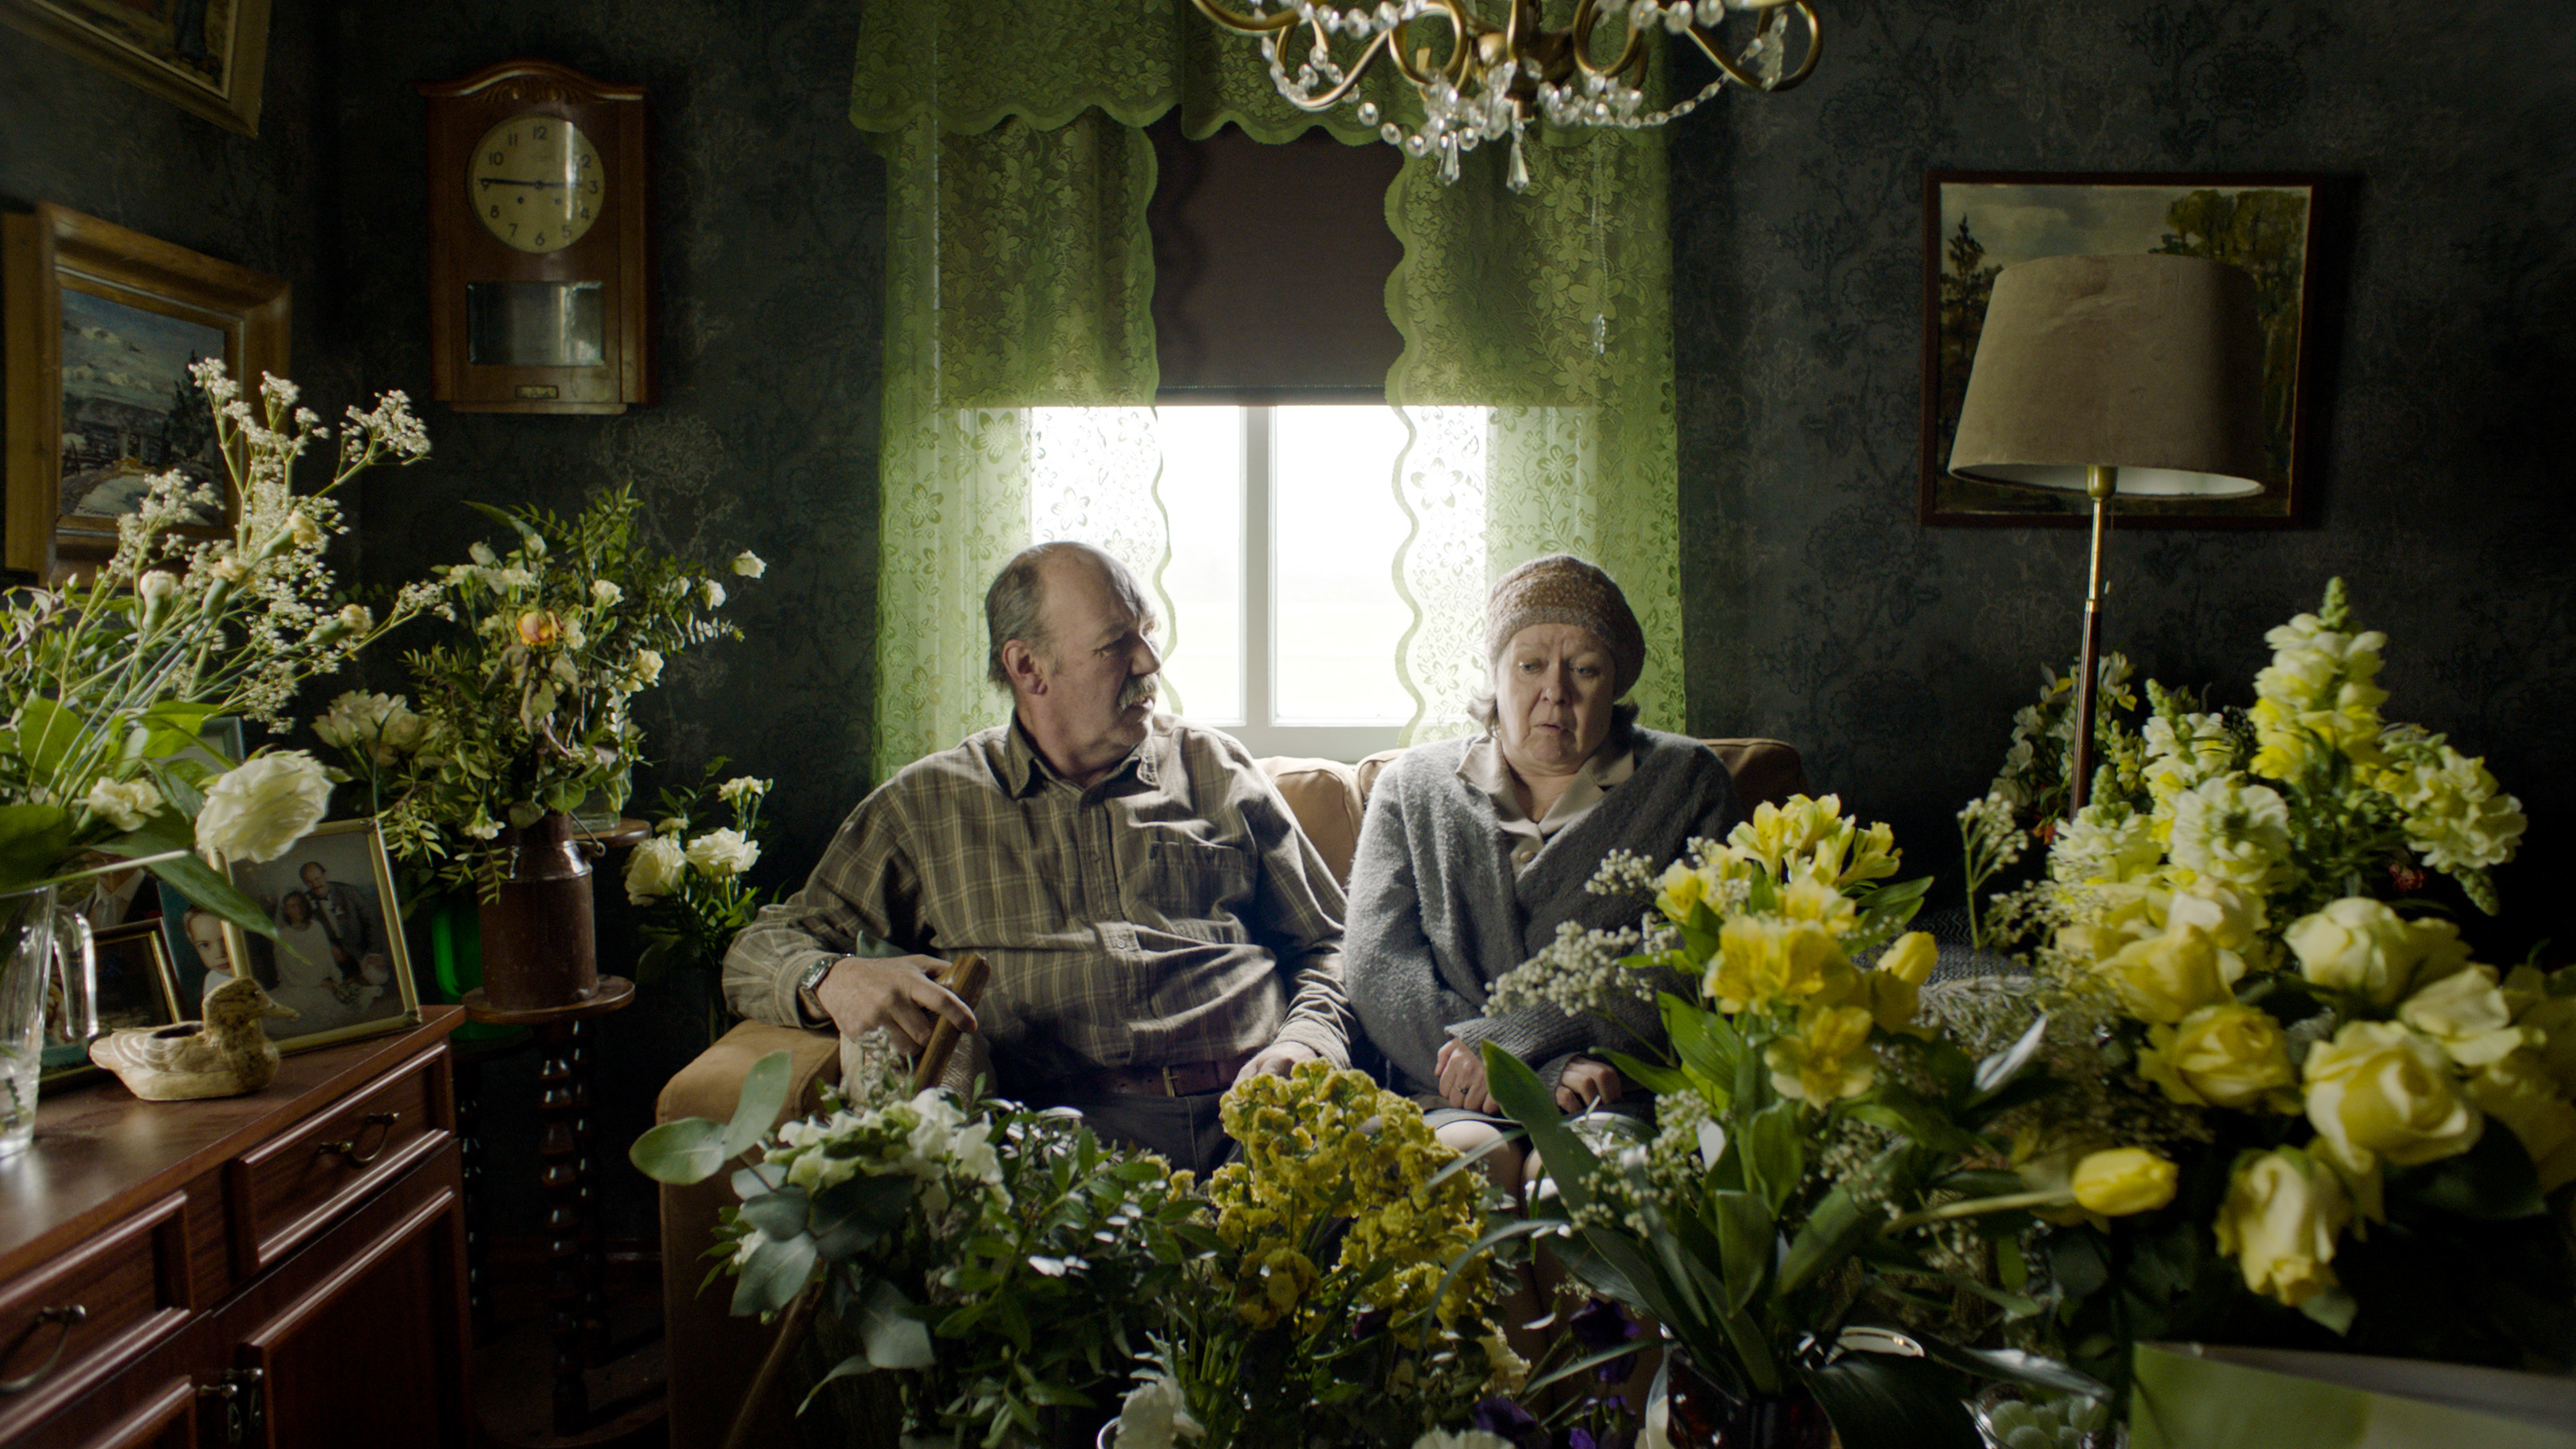 Kuvassa on Peik Stenberg ja Lena Labart istumassa sohvalla ja edessä sekä ympärillä on kukkasia.